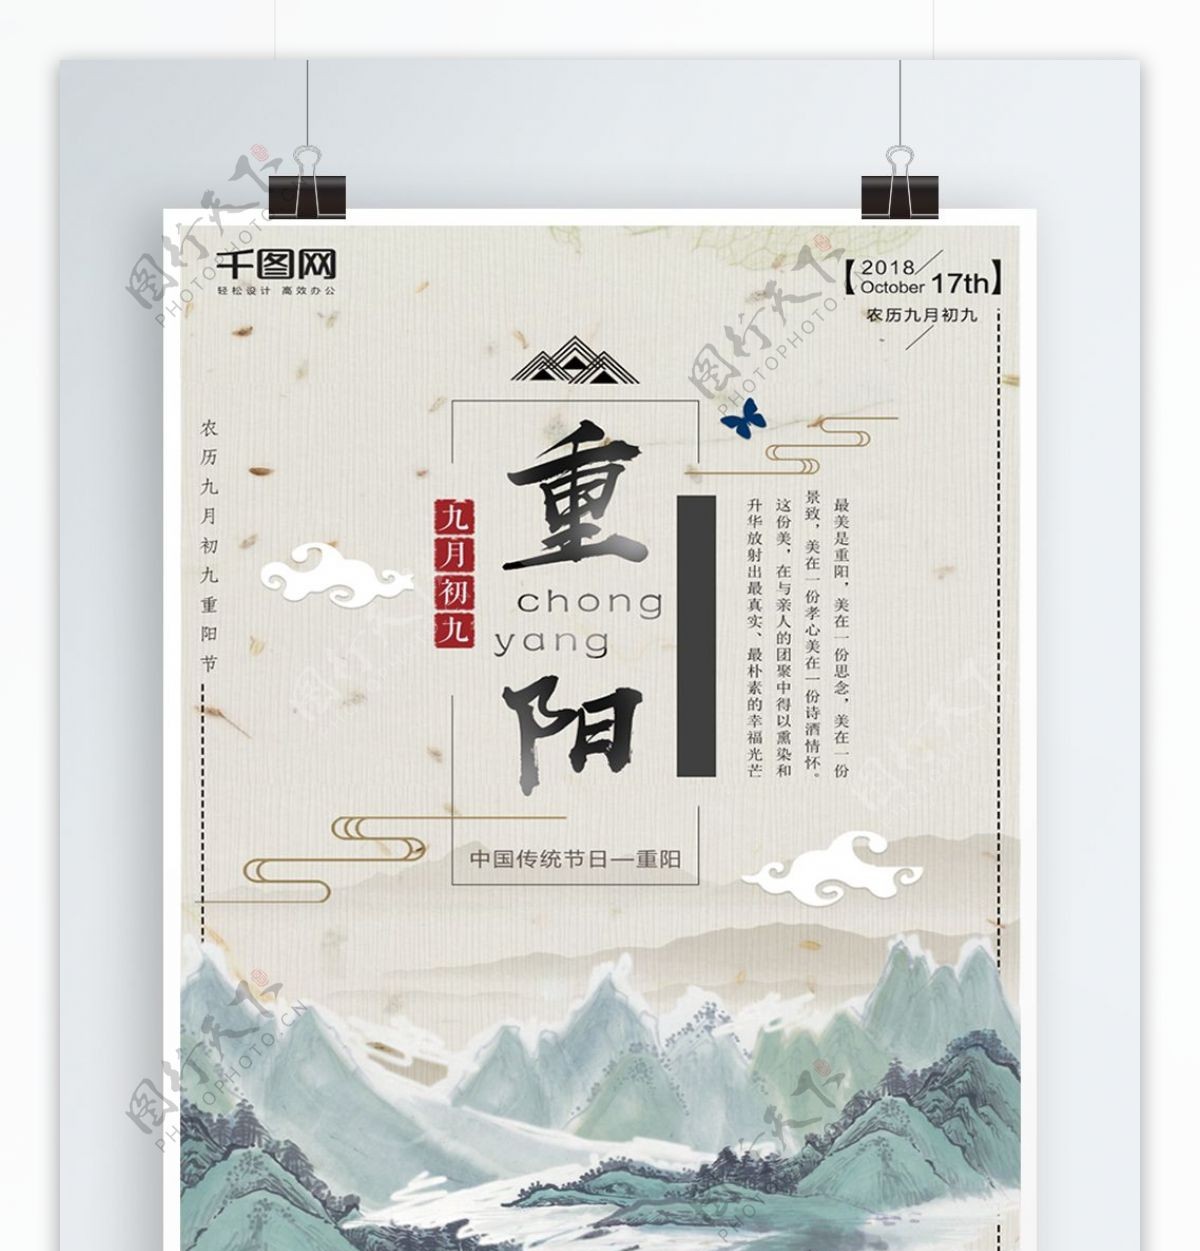 中国风山水重阳节水墨风格创意海报